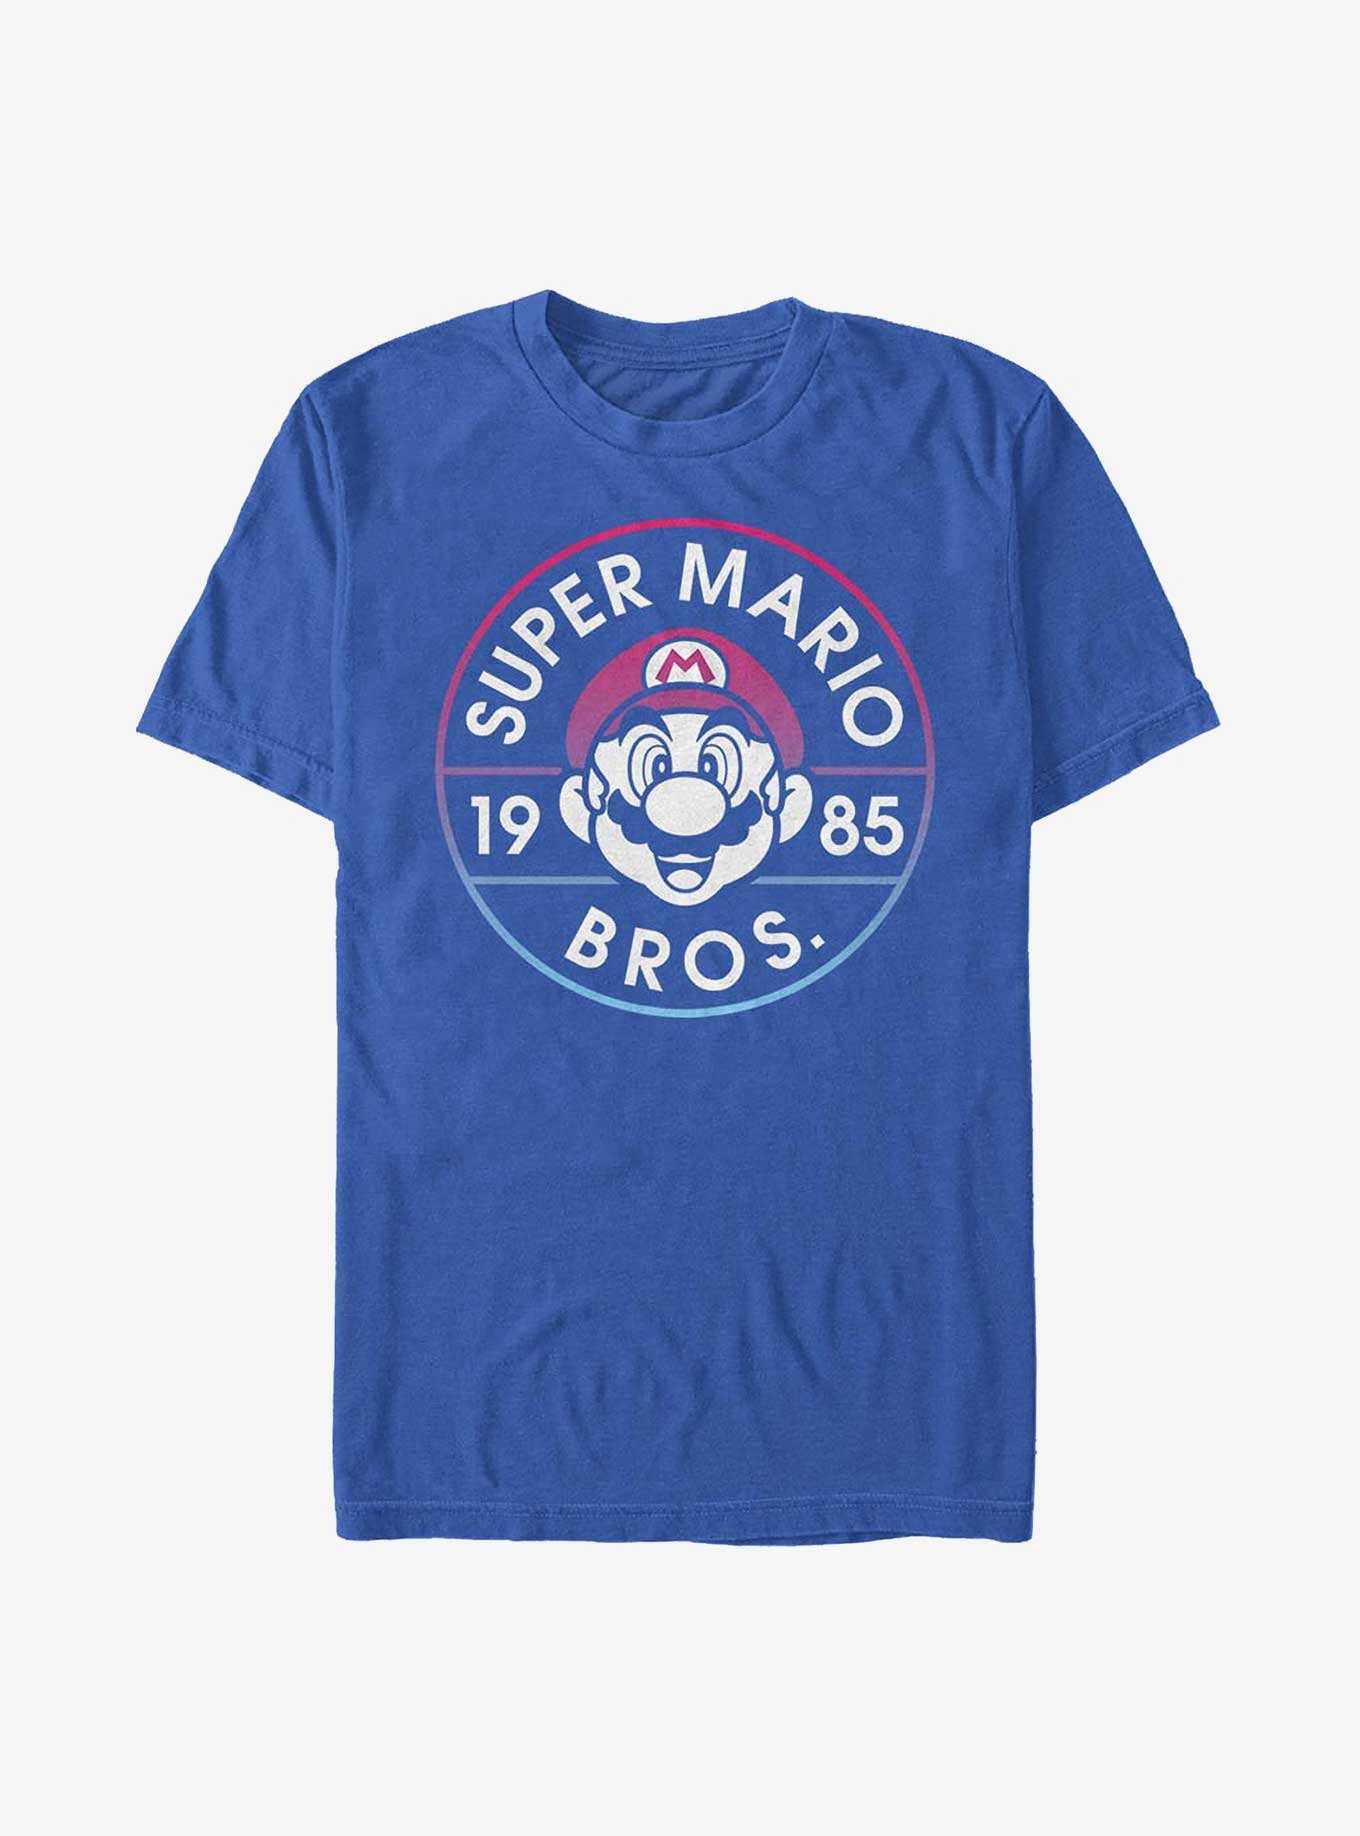 Nintendo Mario Super Mario Bros Badge T-Shirt, , hi-res